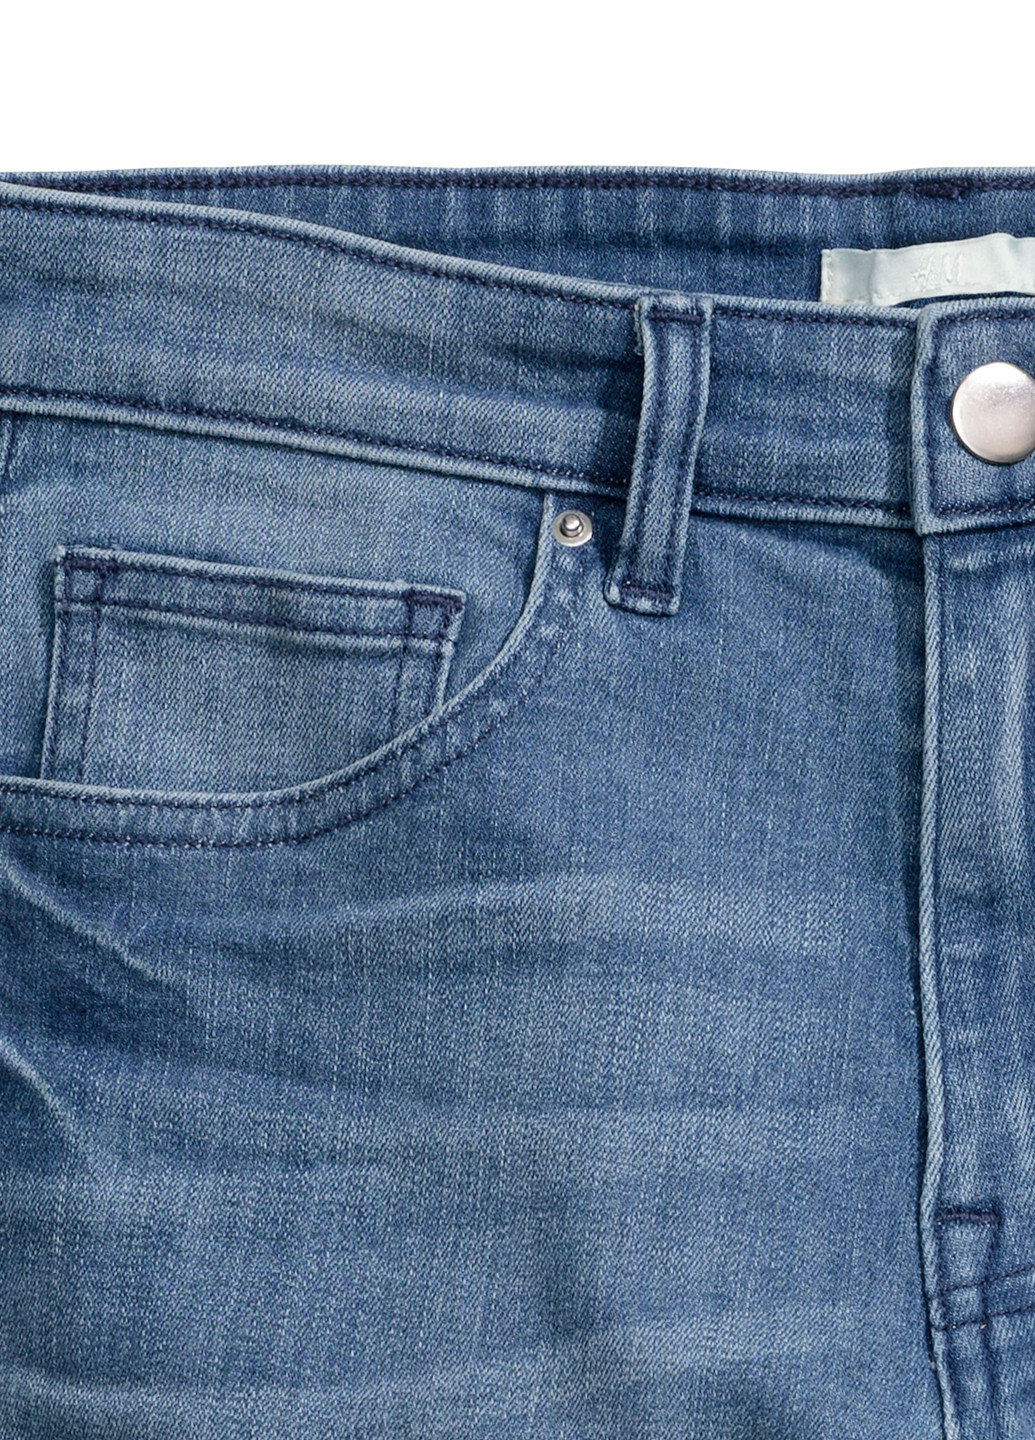 Шорты H&M синие джинсовые